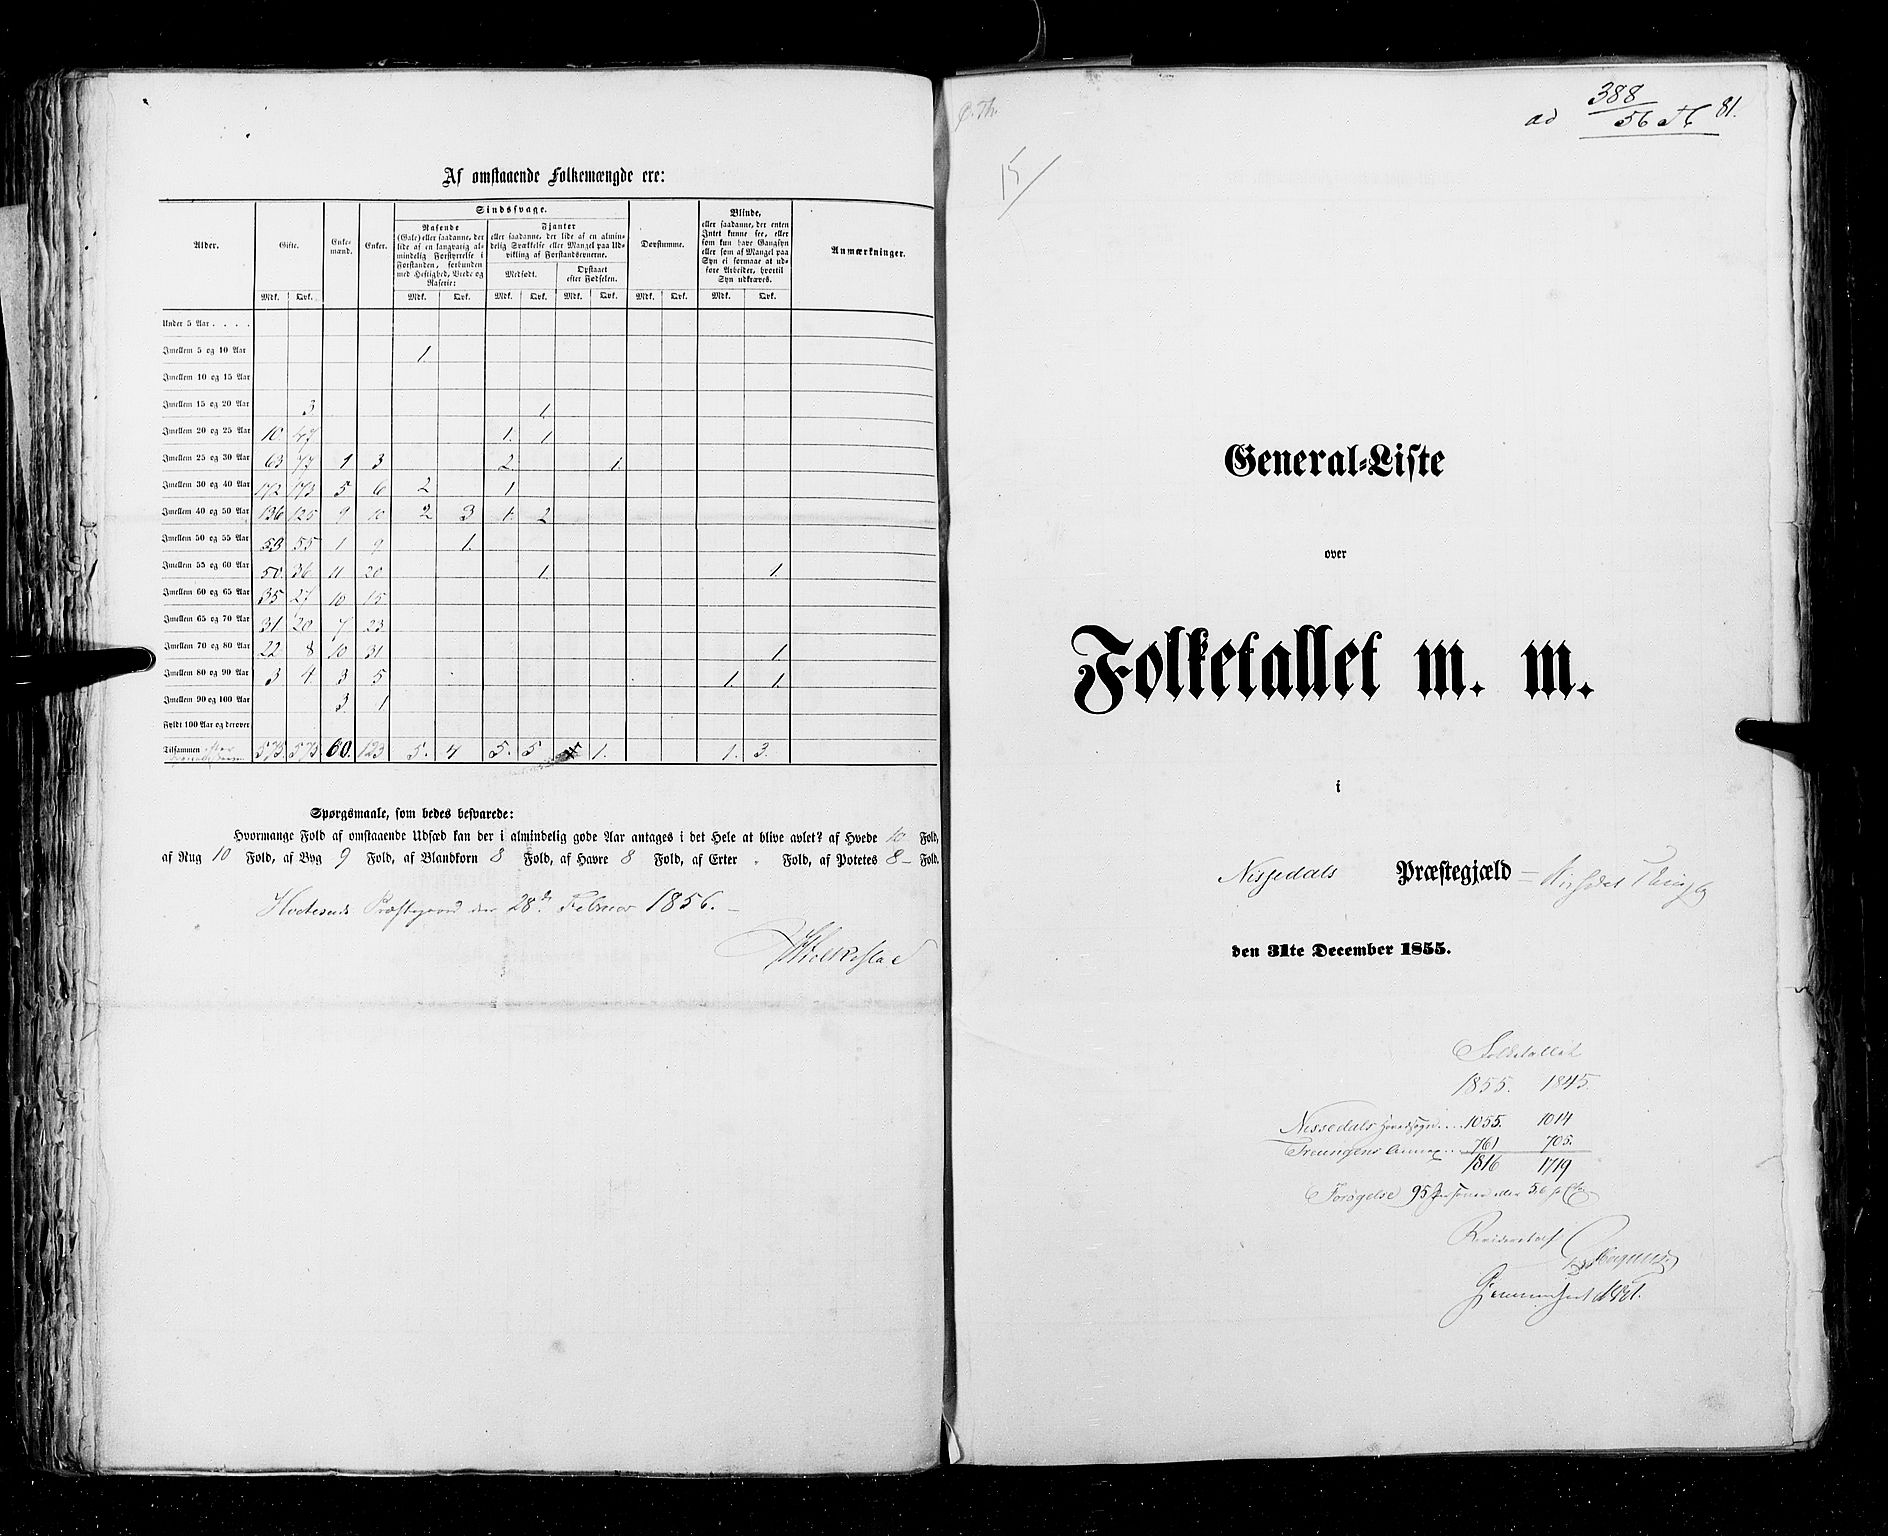 RA, Folketellingen 1855, bind 3: Bratsberg amt, Nedenes amt og Lister og Mandal amt, 1855, s. 81